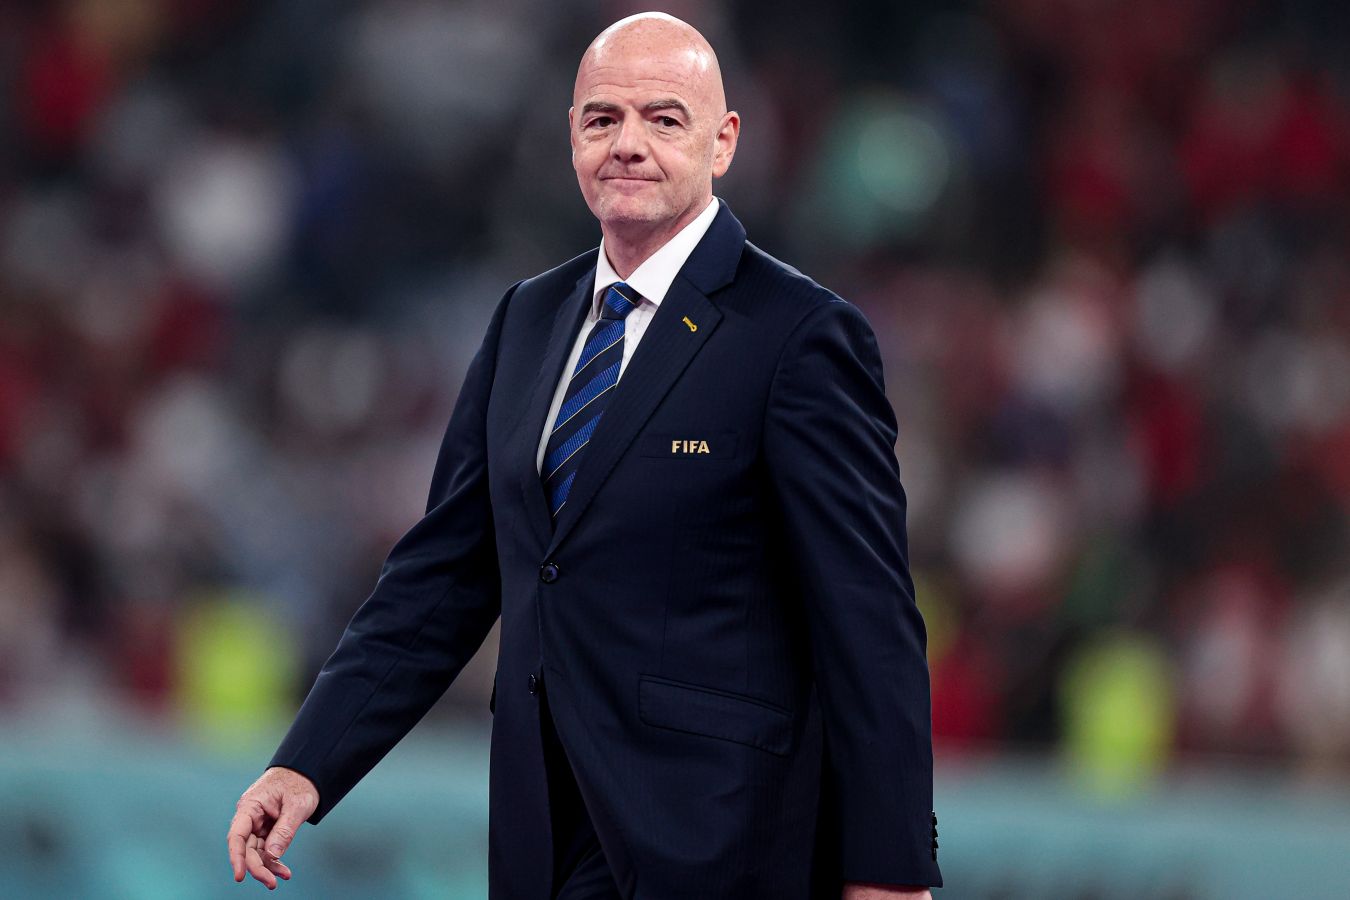 Джанни Инфантино переизбран на пост президента ФИФА. Он был единственным кандидатом